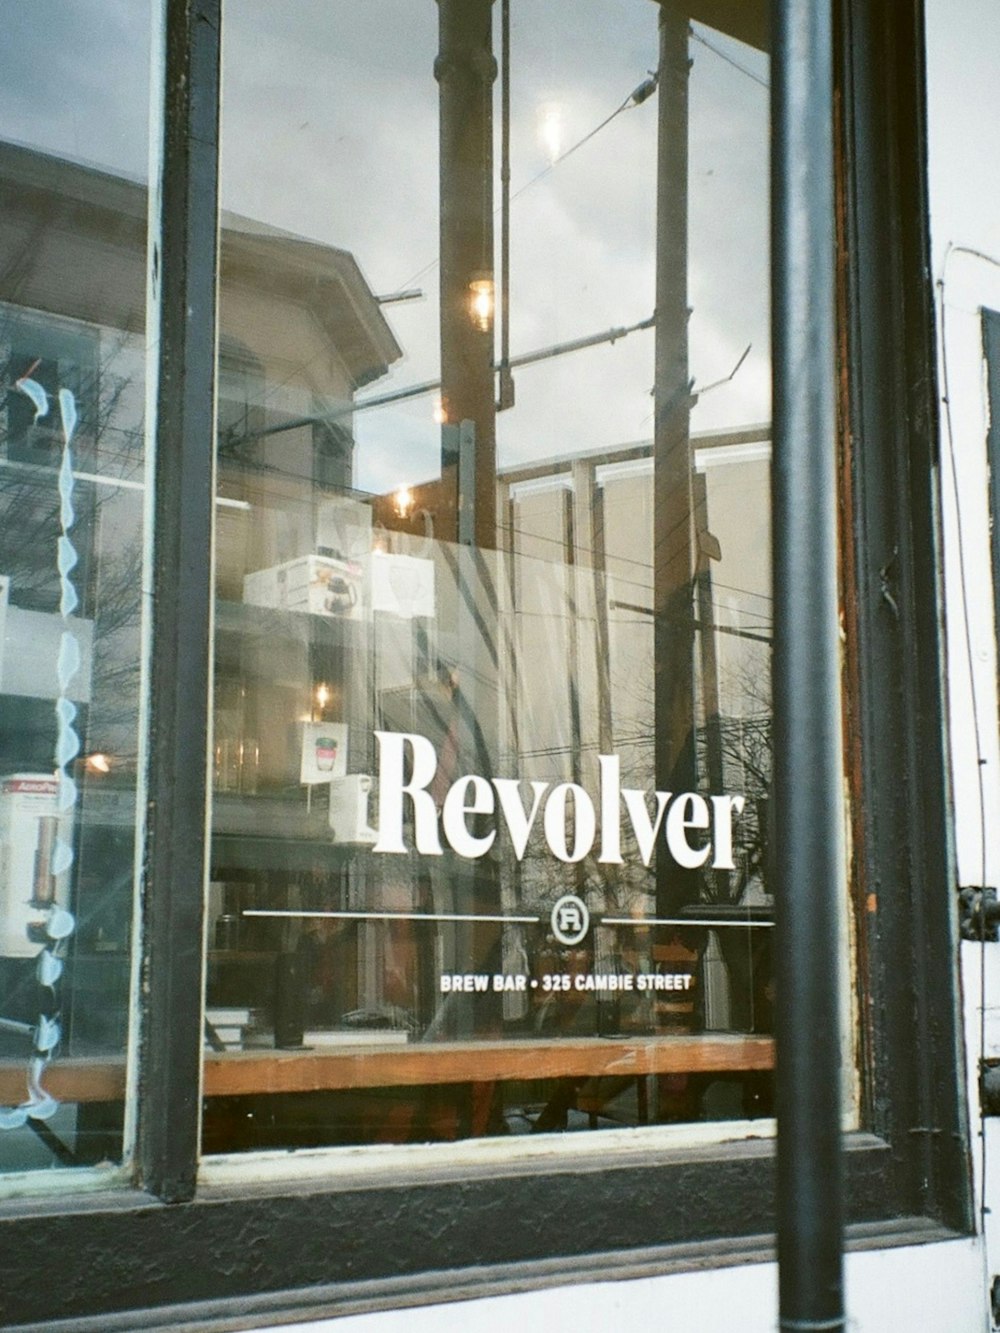 Una vetrina del negozio con le parole Revolver scritte su di essa